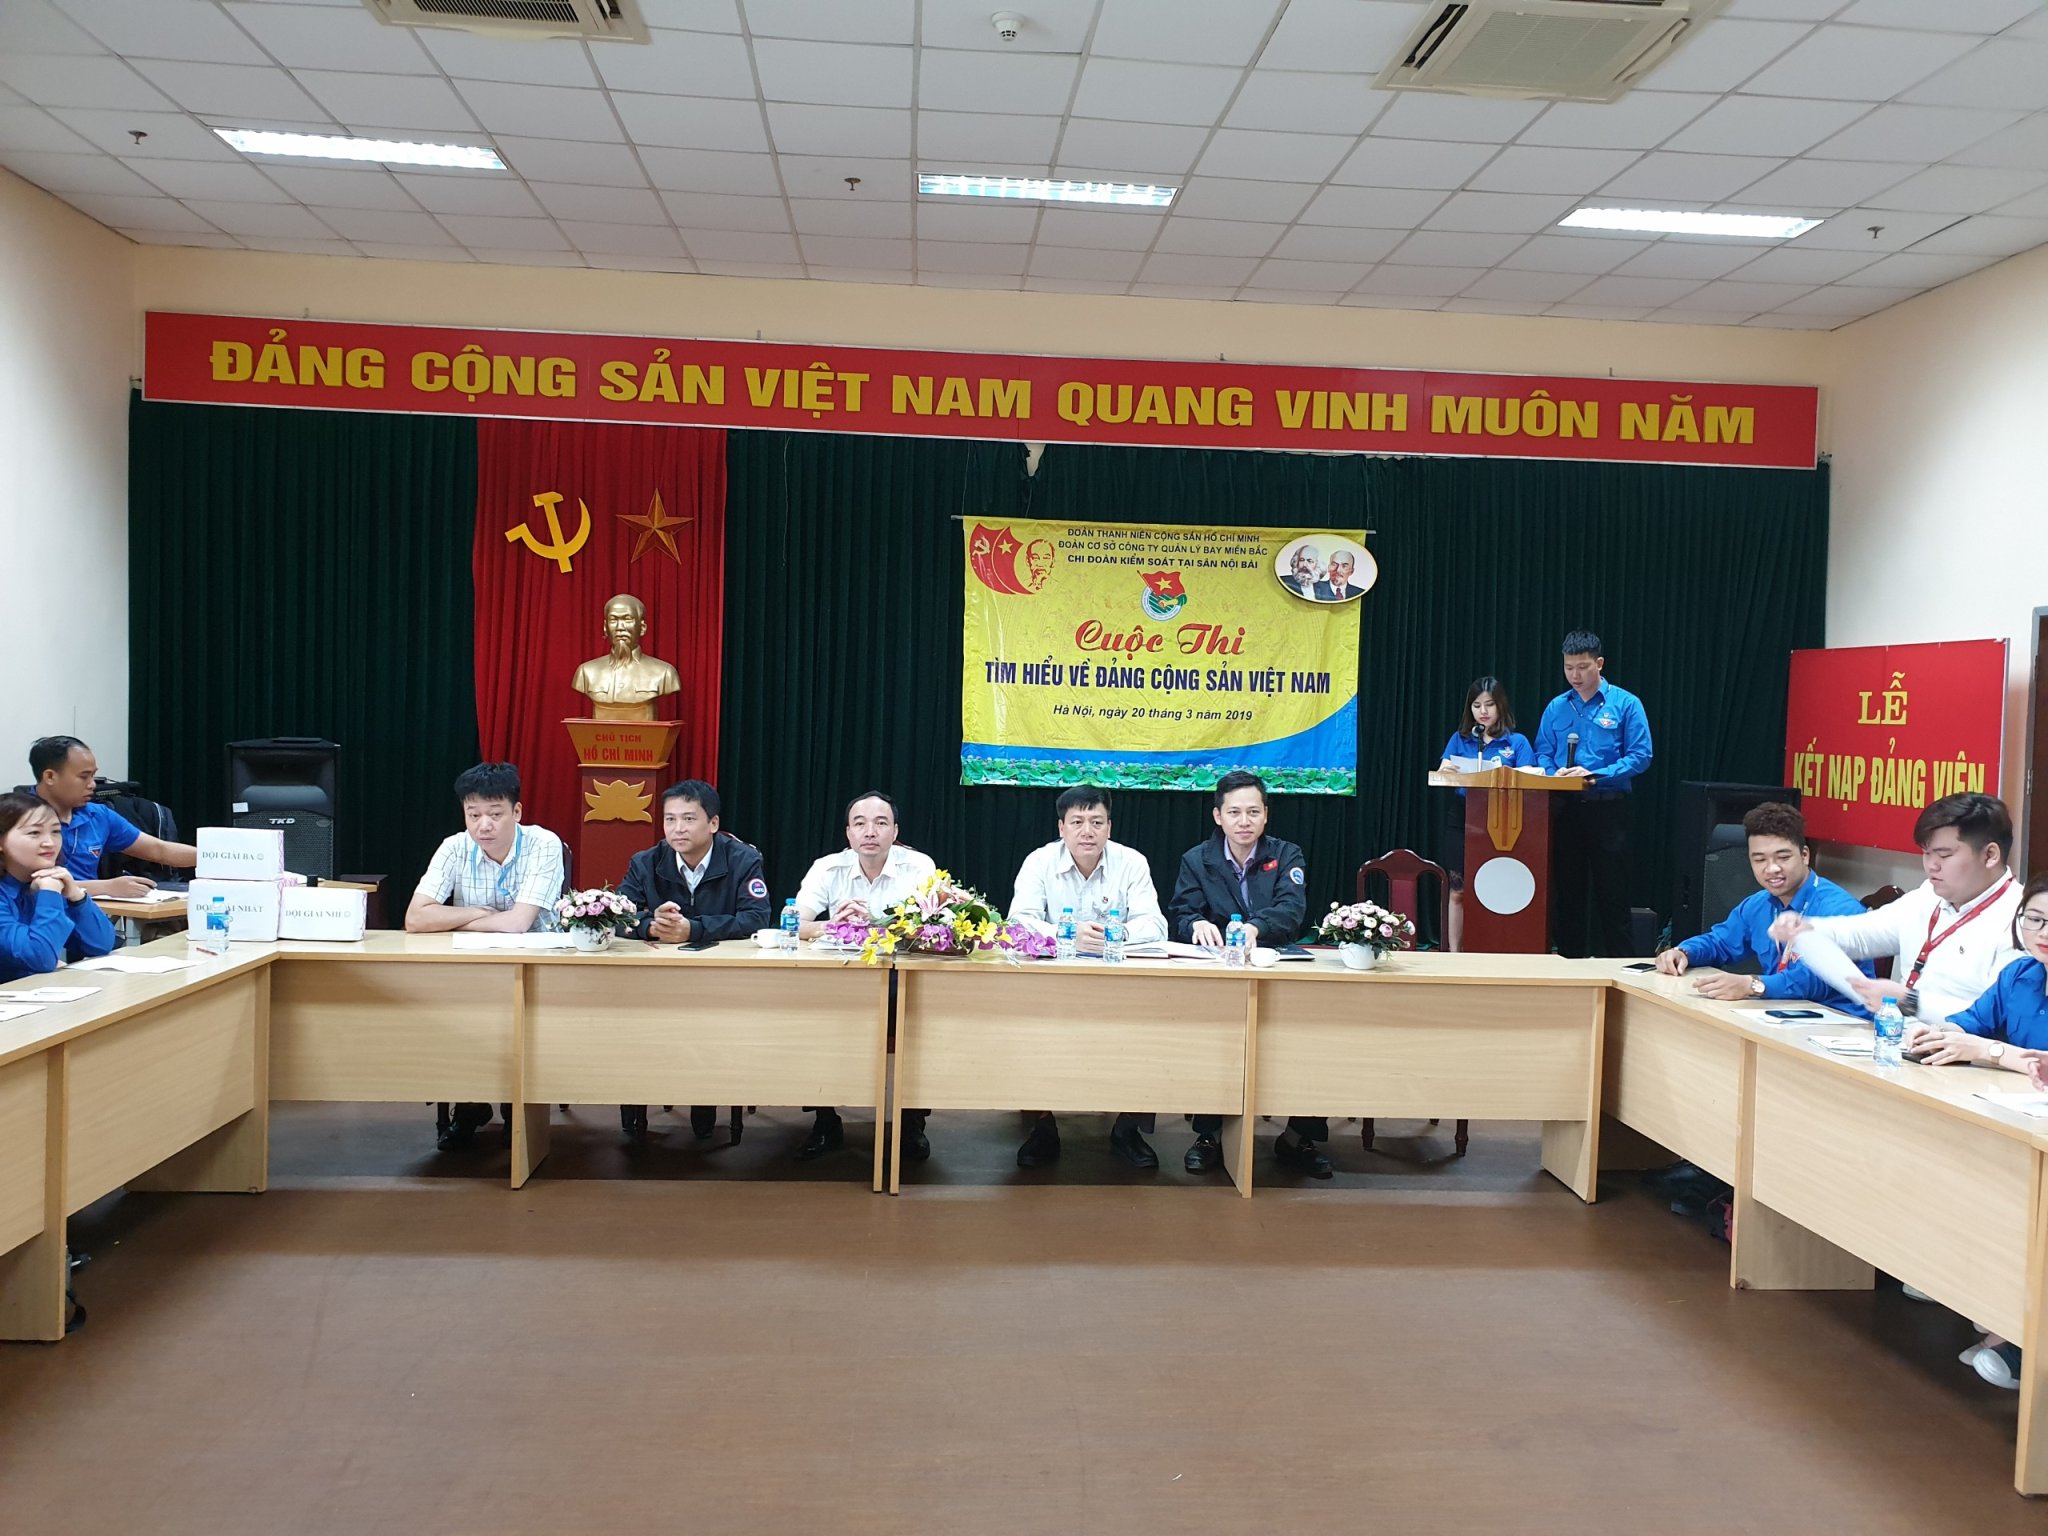 Chi đoàn Kiểm soát tại sân Nội Bài tổ chức cuộc thi về Đảng Cộng sản Việt Nam